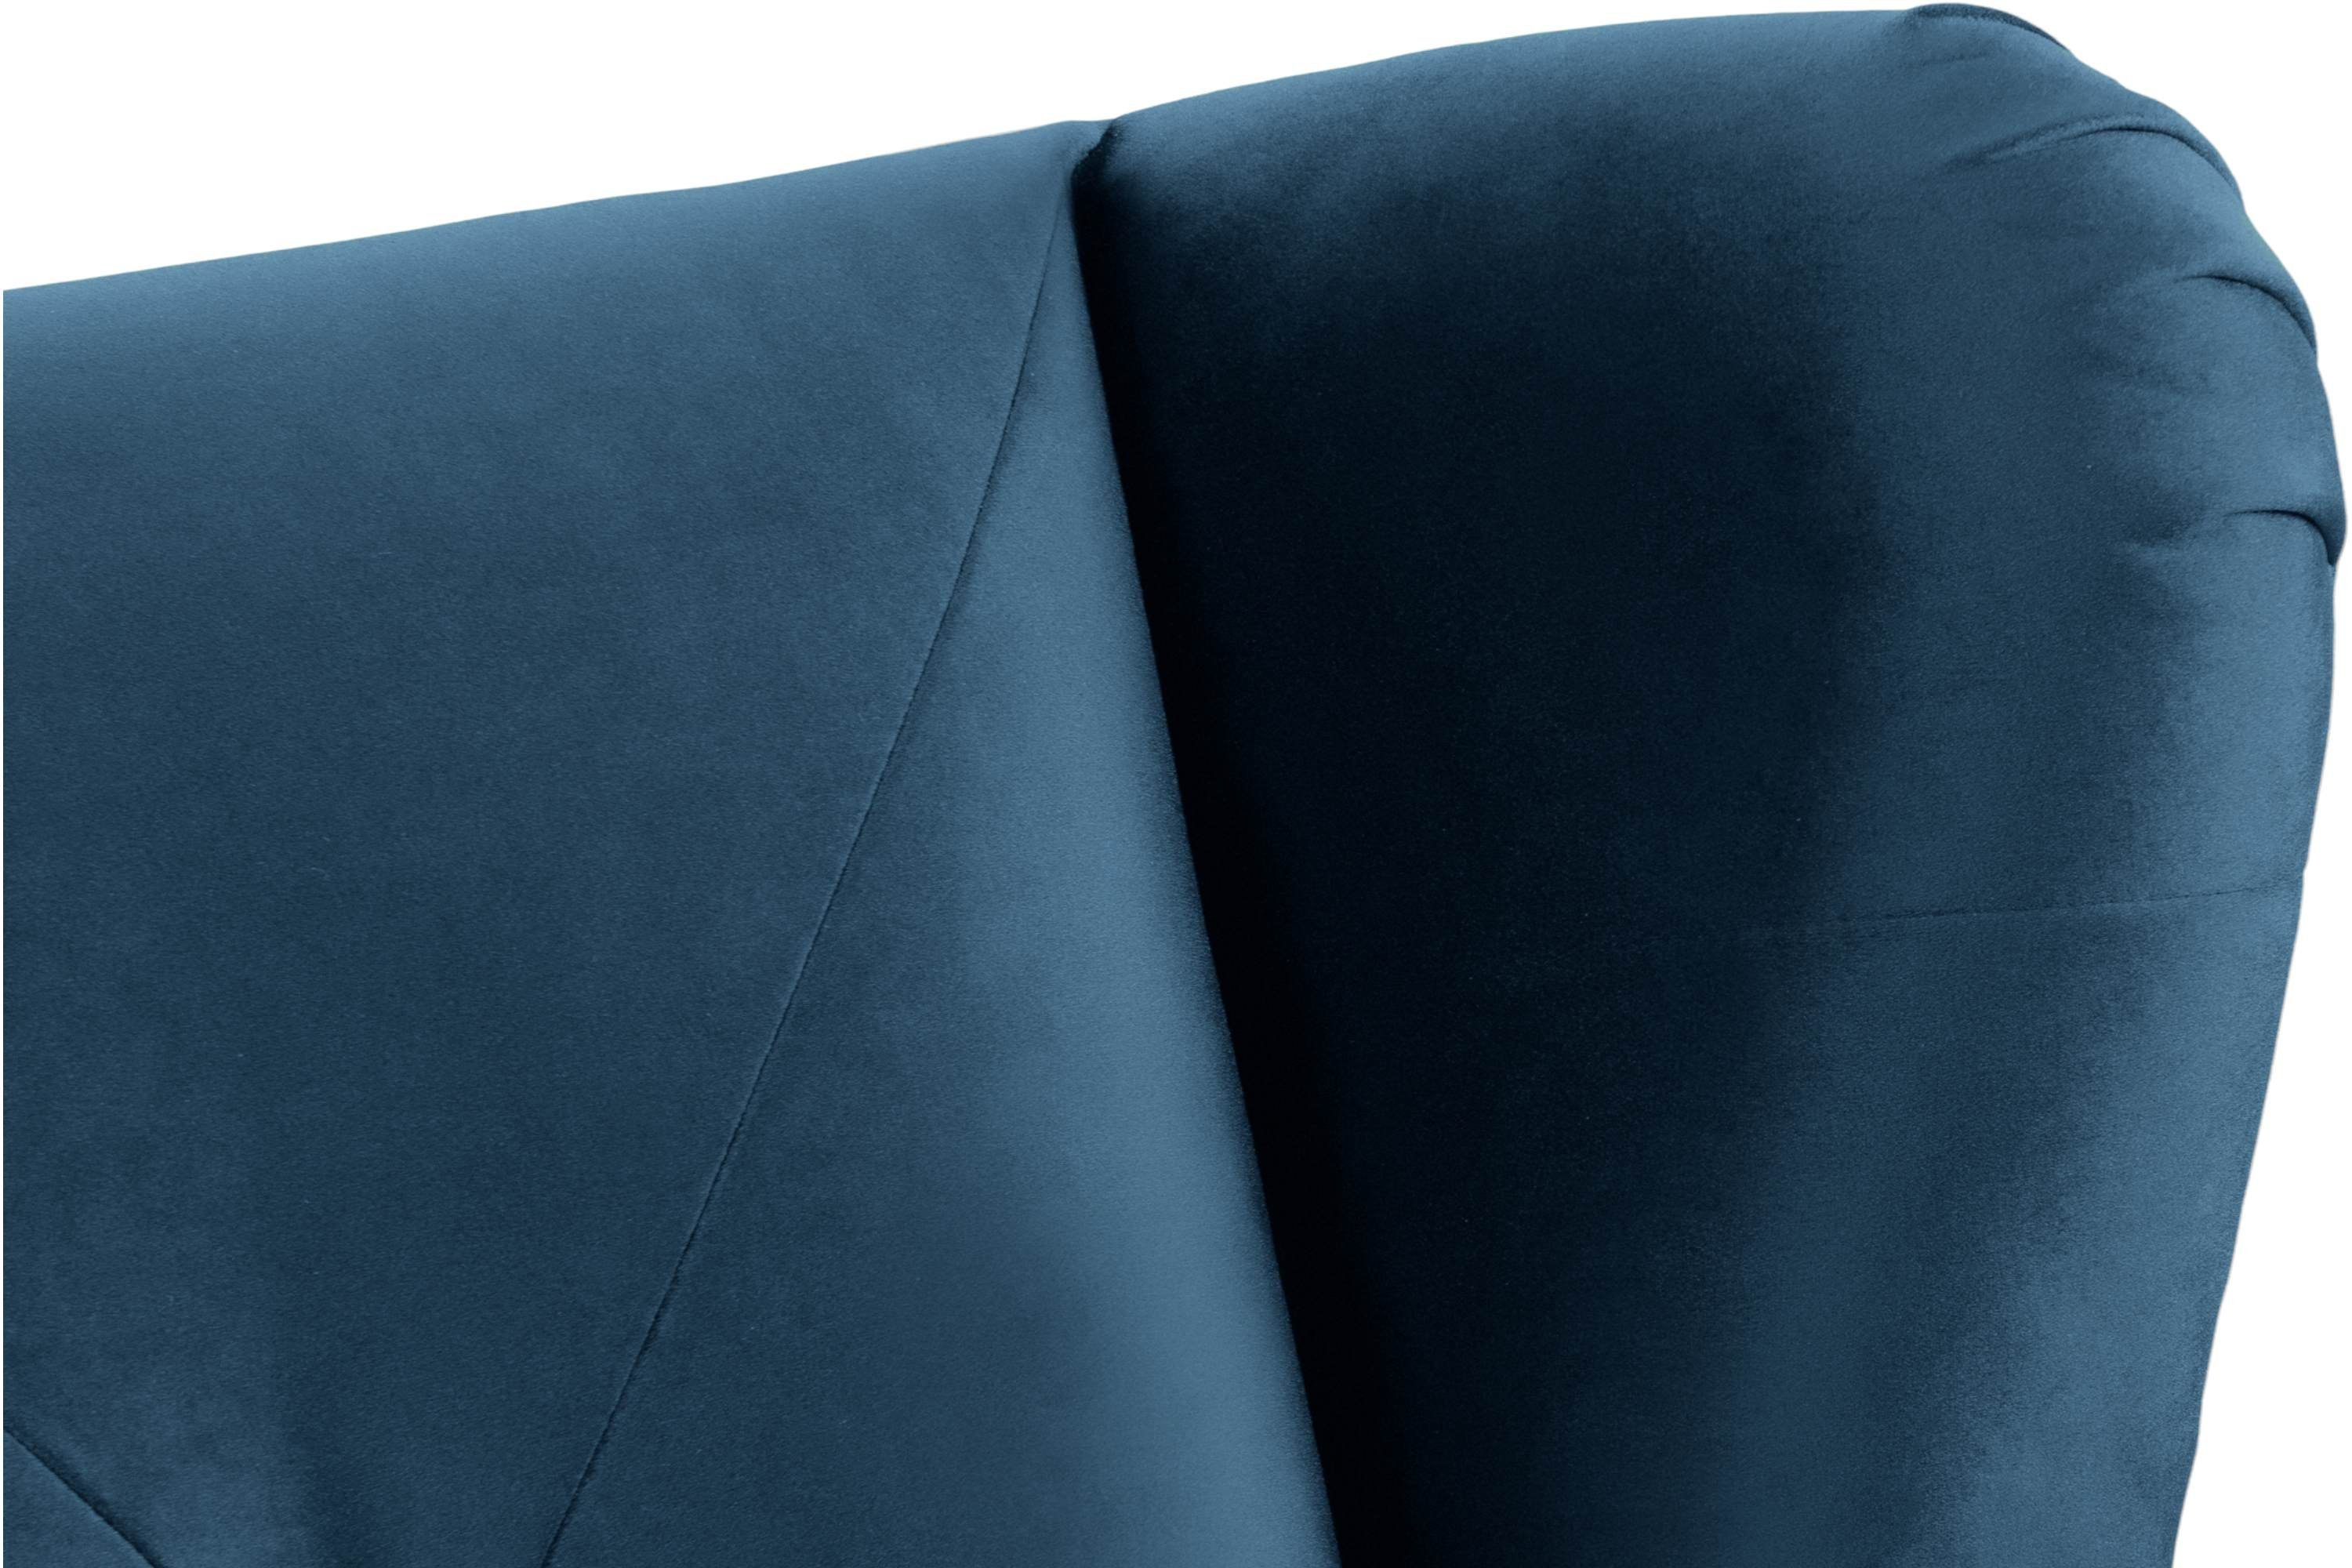 Oberstoff, bequemer Sitz Konsimo im wasserabweisender Sitzer, marineblau MIRO Sofa 2 Sofa Schaumstoff | marineblau